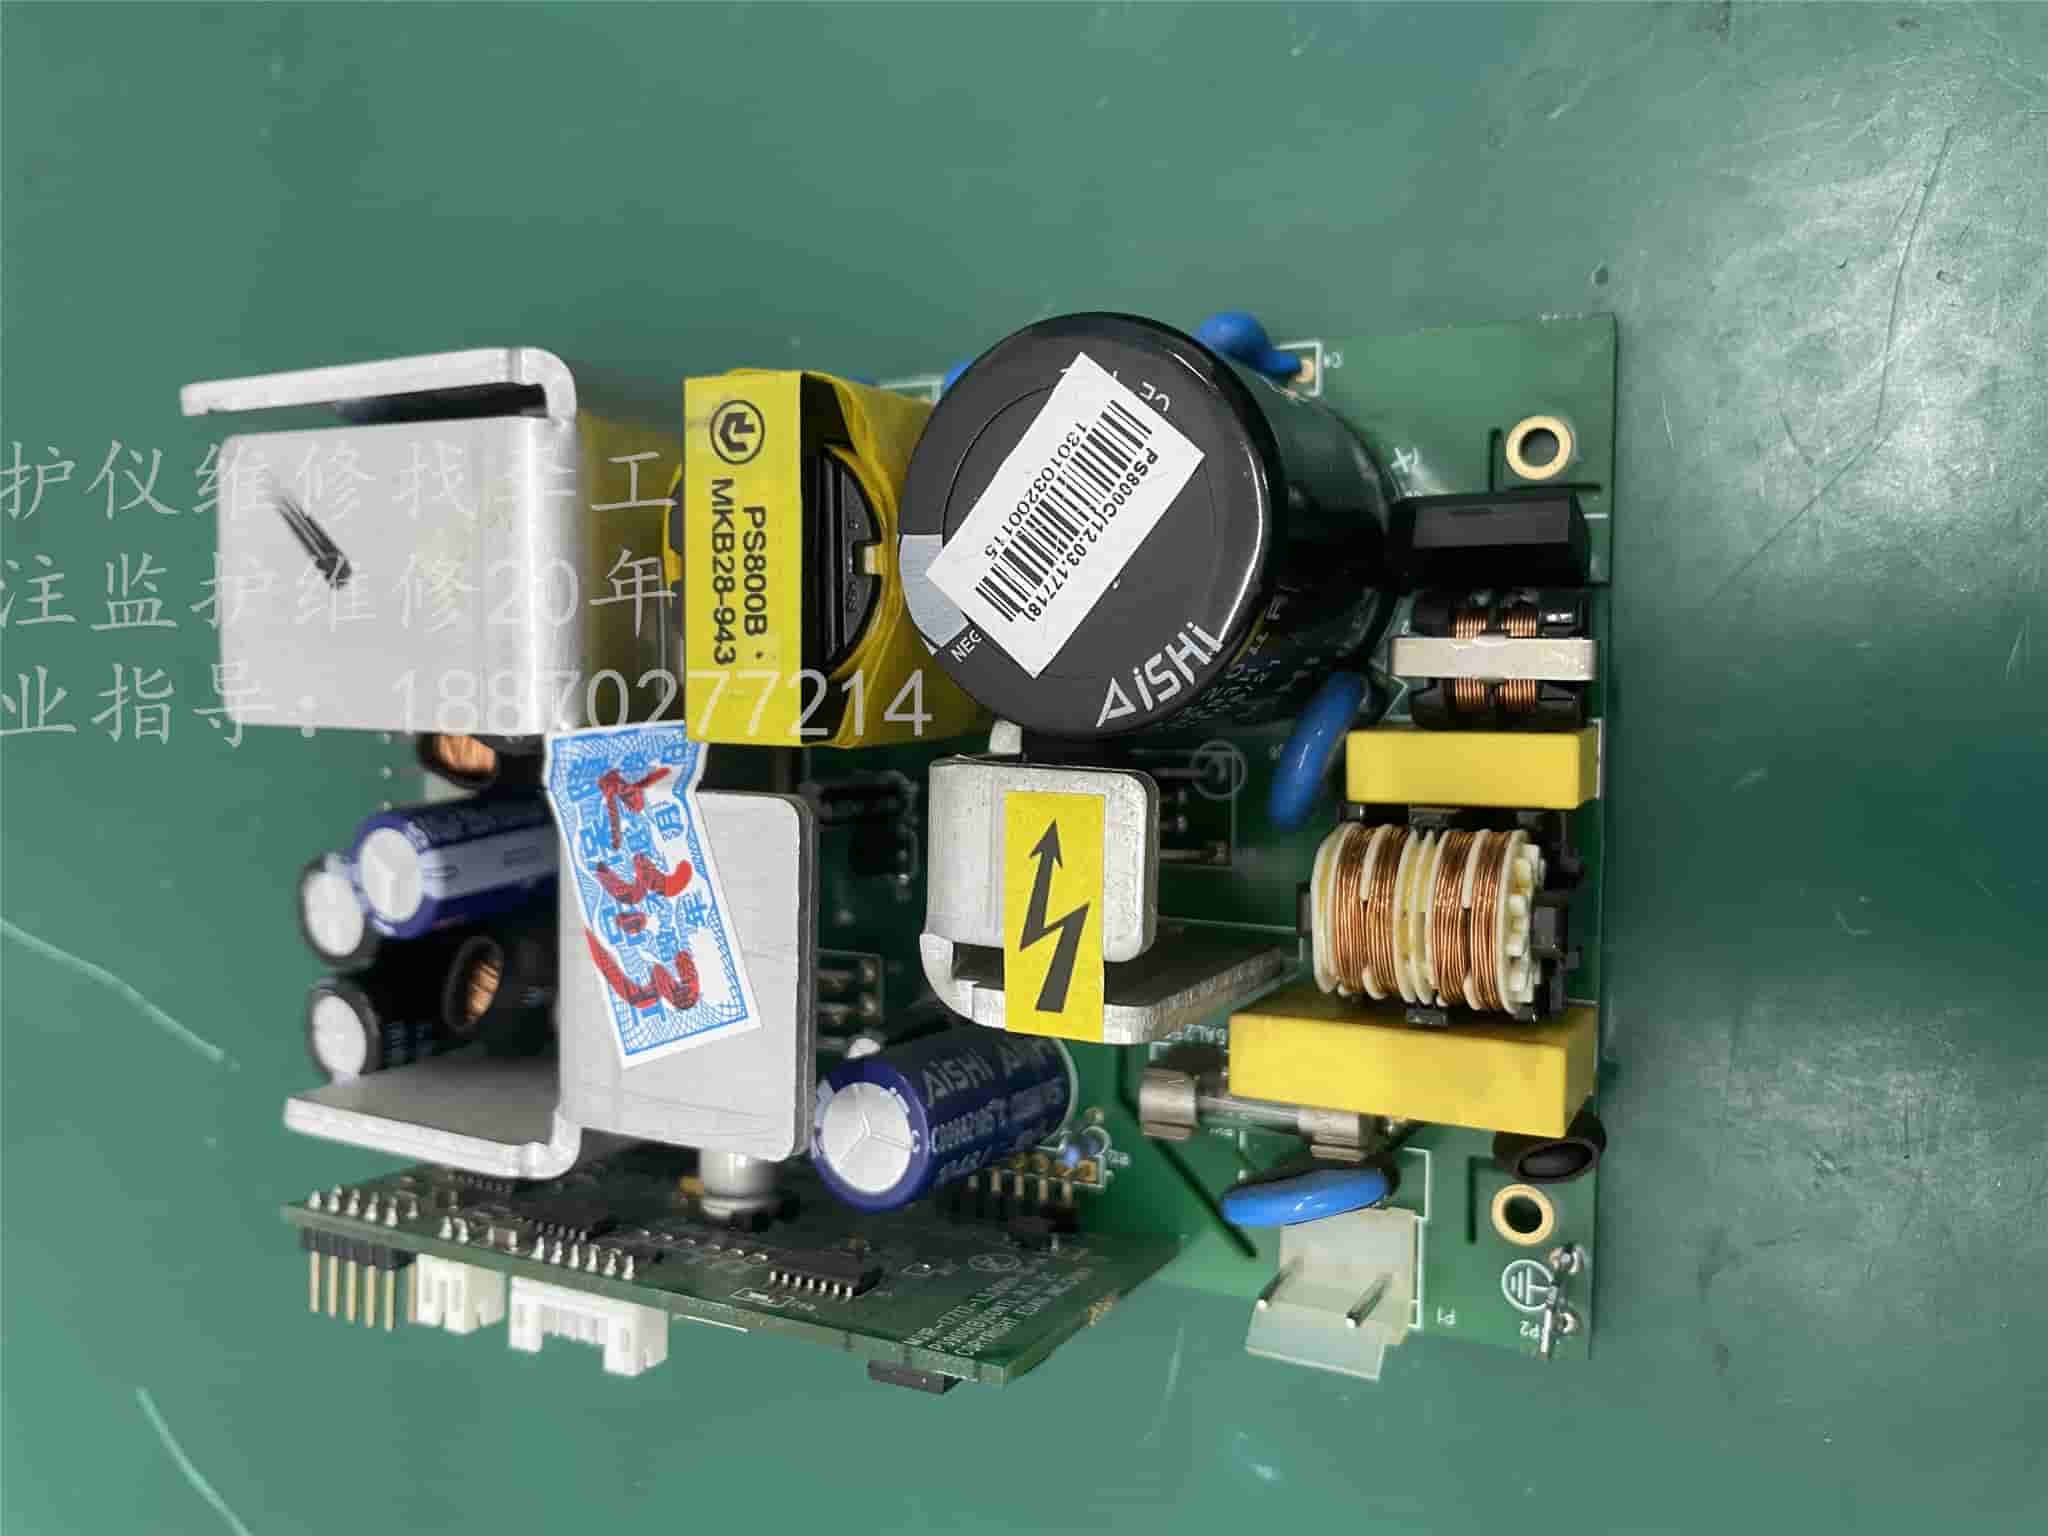 理邦M3监护仪电源板PS900BPOWER(12.03.17714) PS800C(12.03 